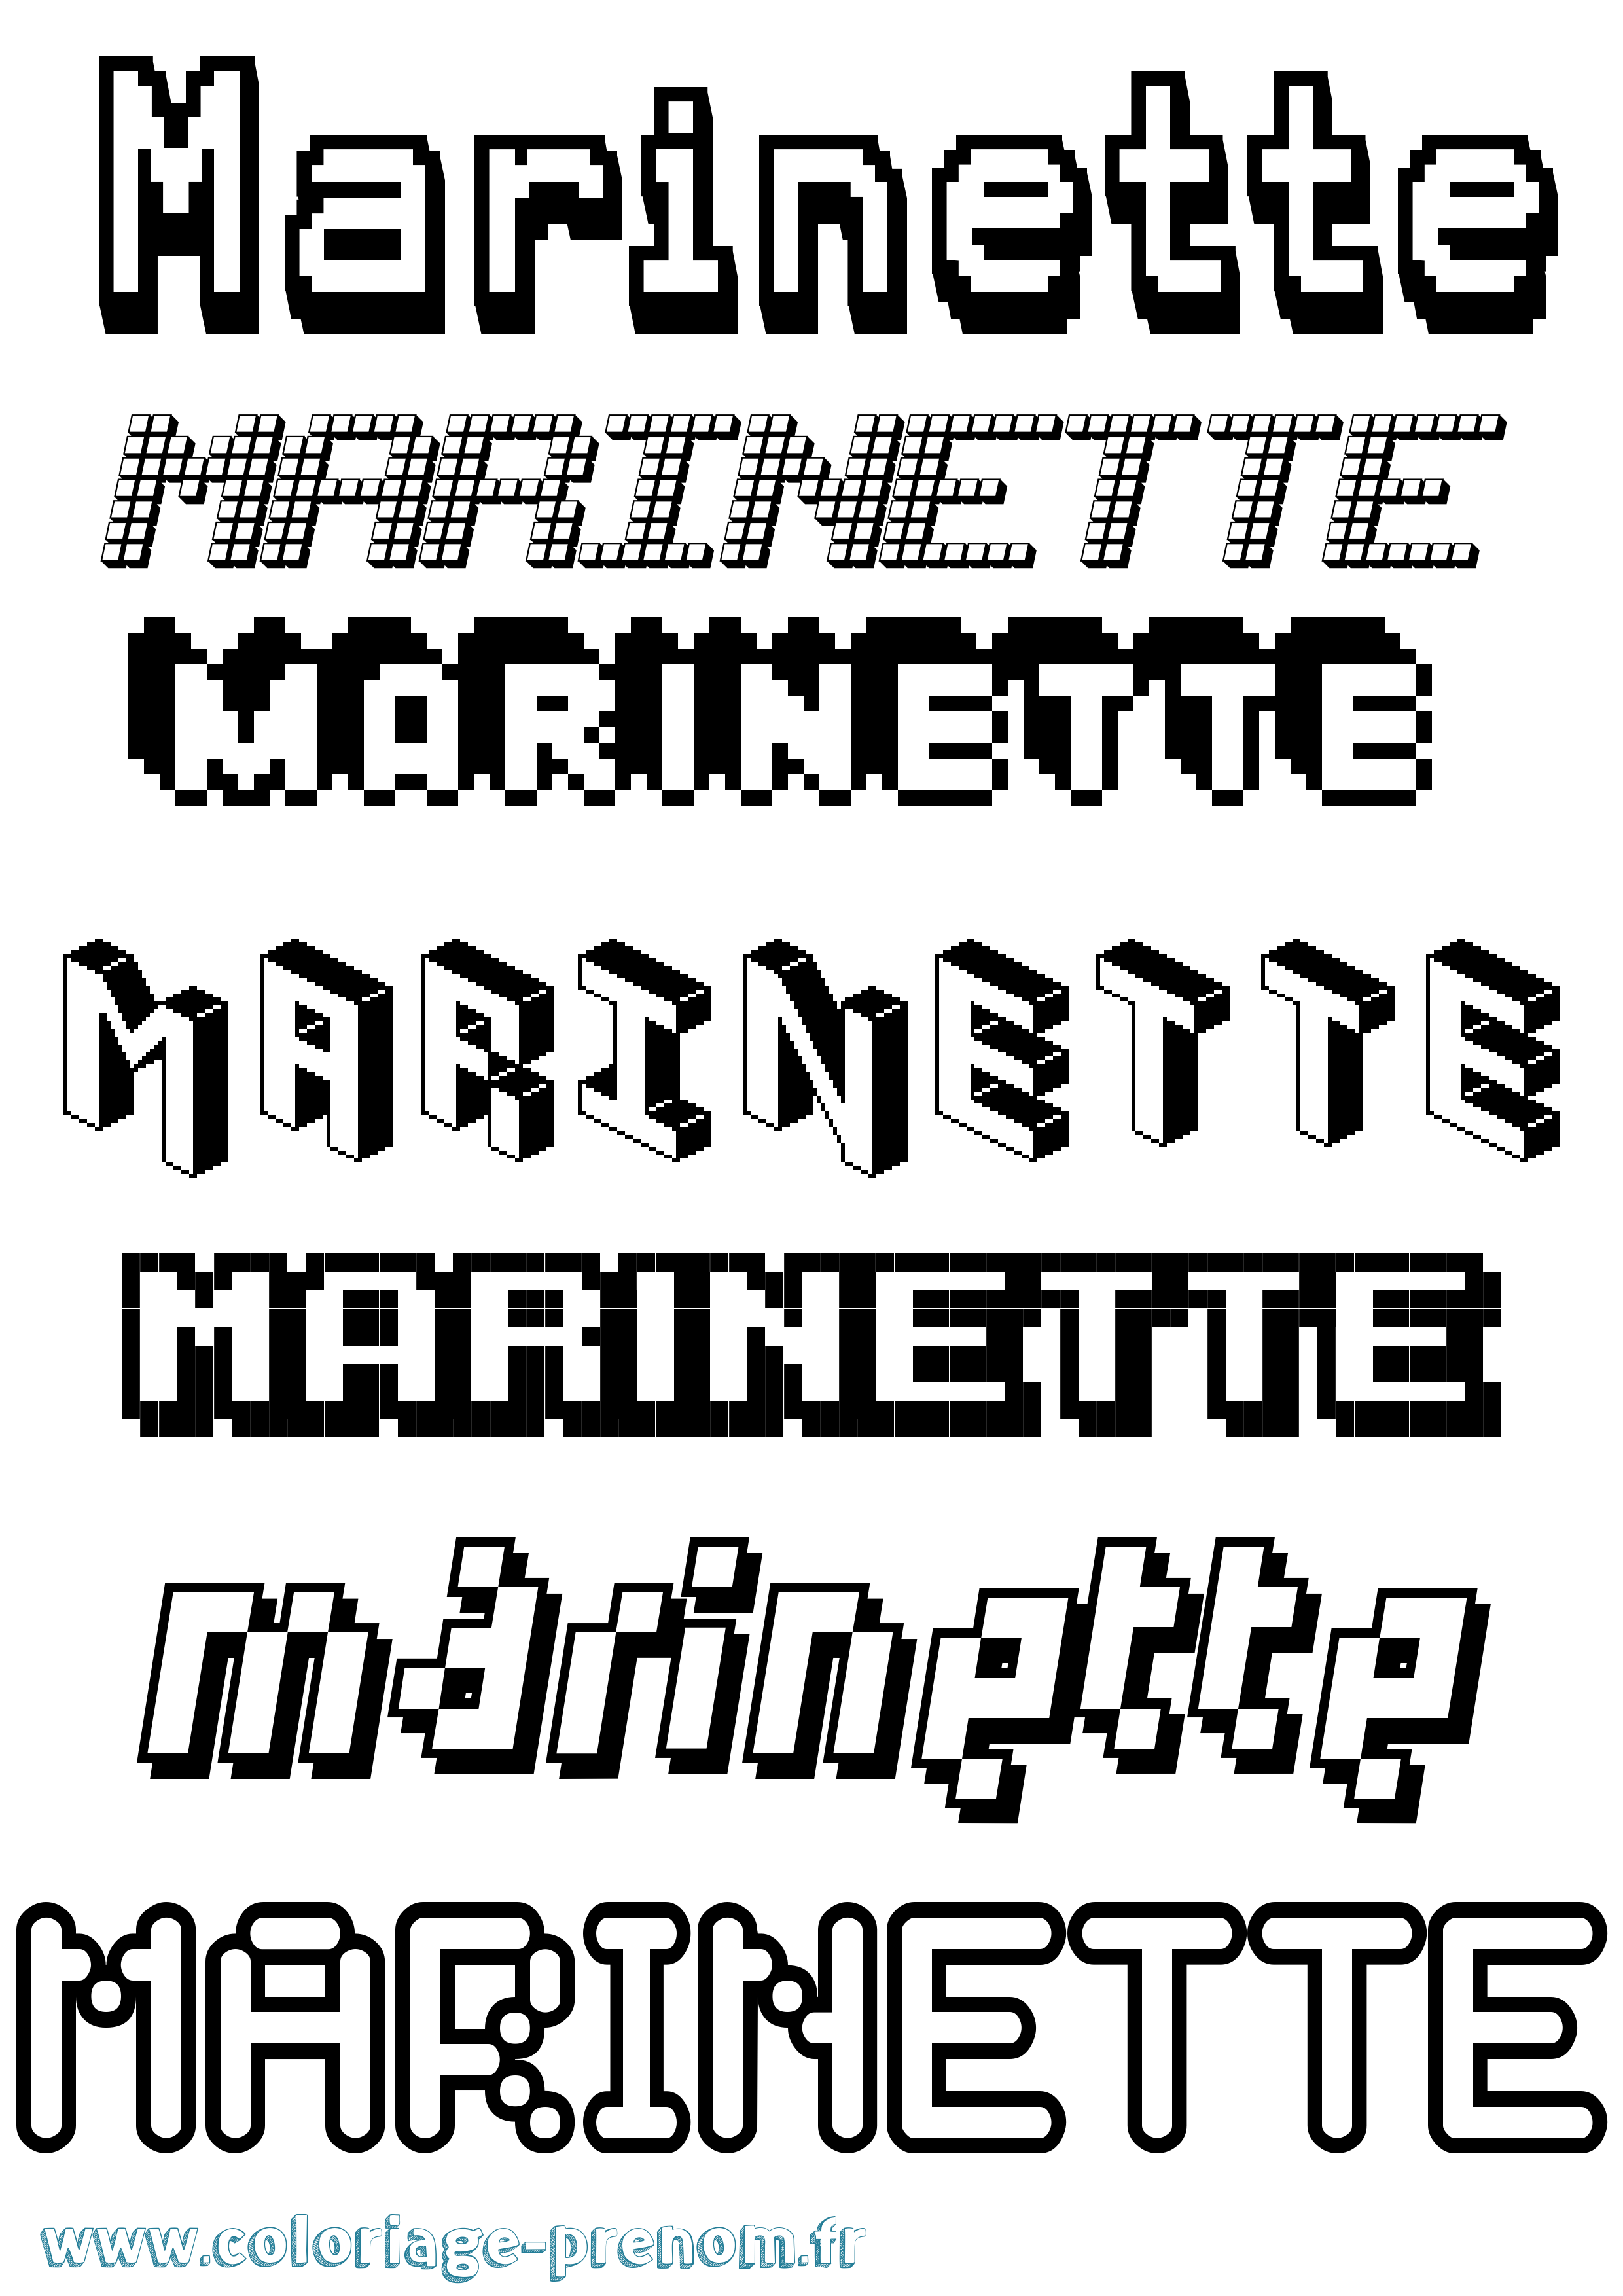 Coloriage prénom Marinette Pixel